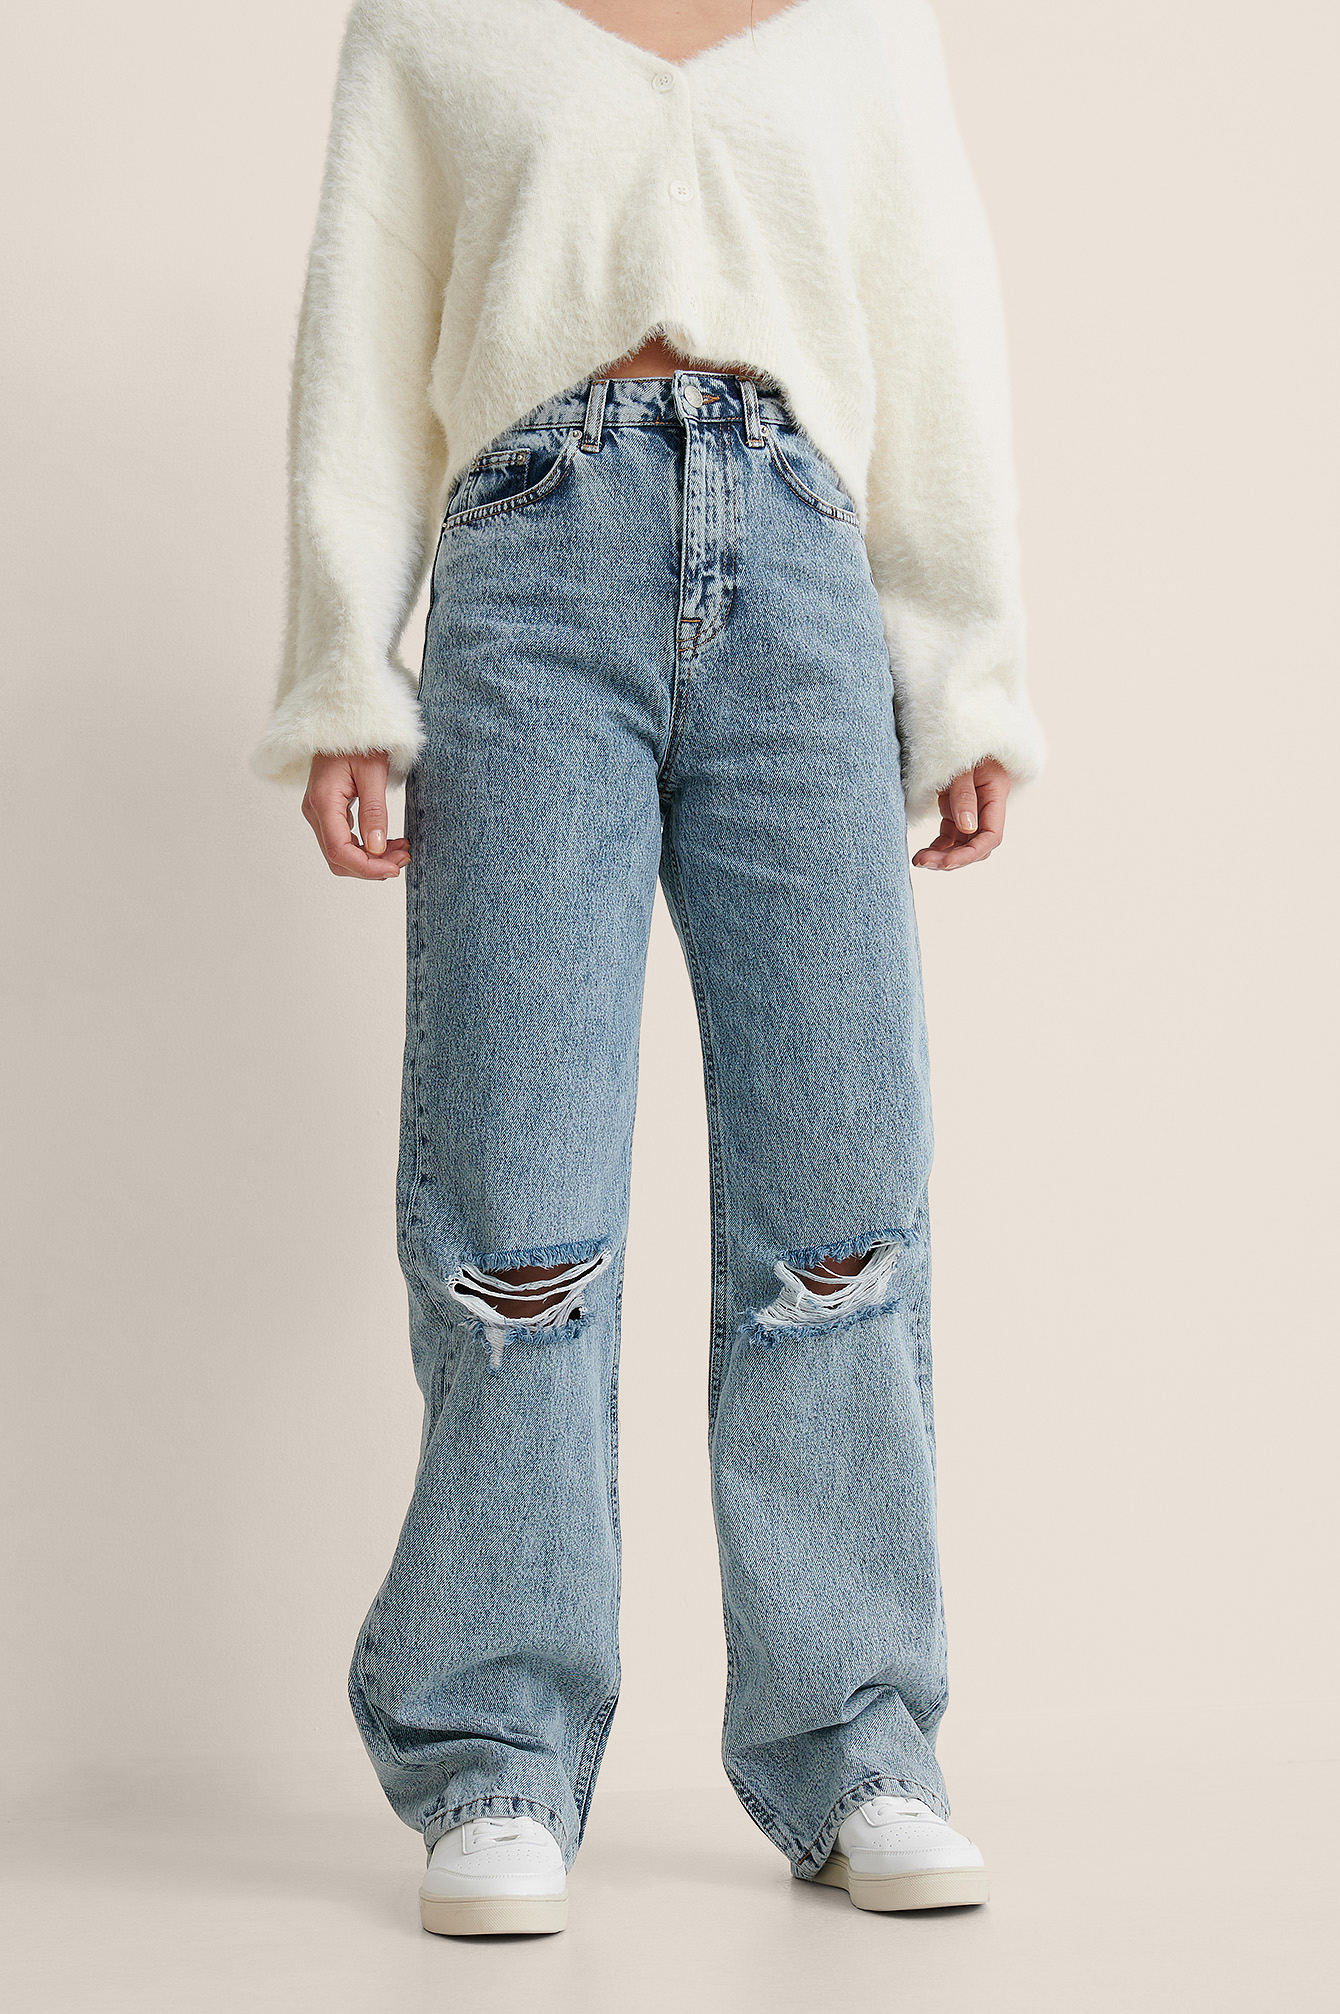 Spektakel angst Kerel Ripped jeans • Dames ripped jeans online kopen | NA-KD